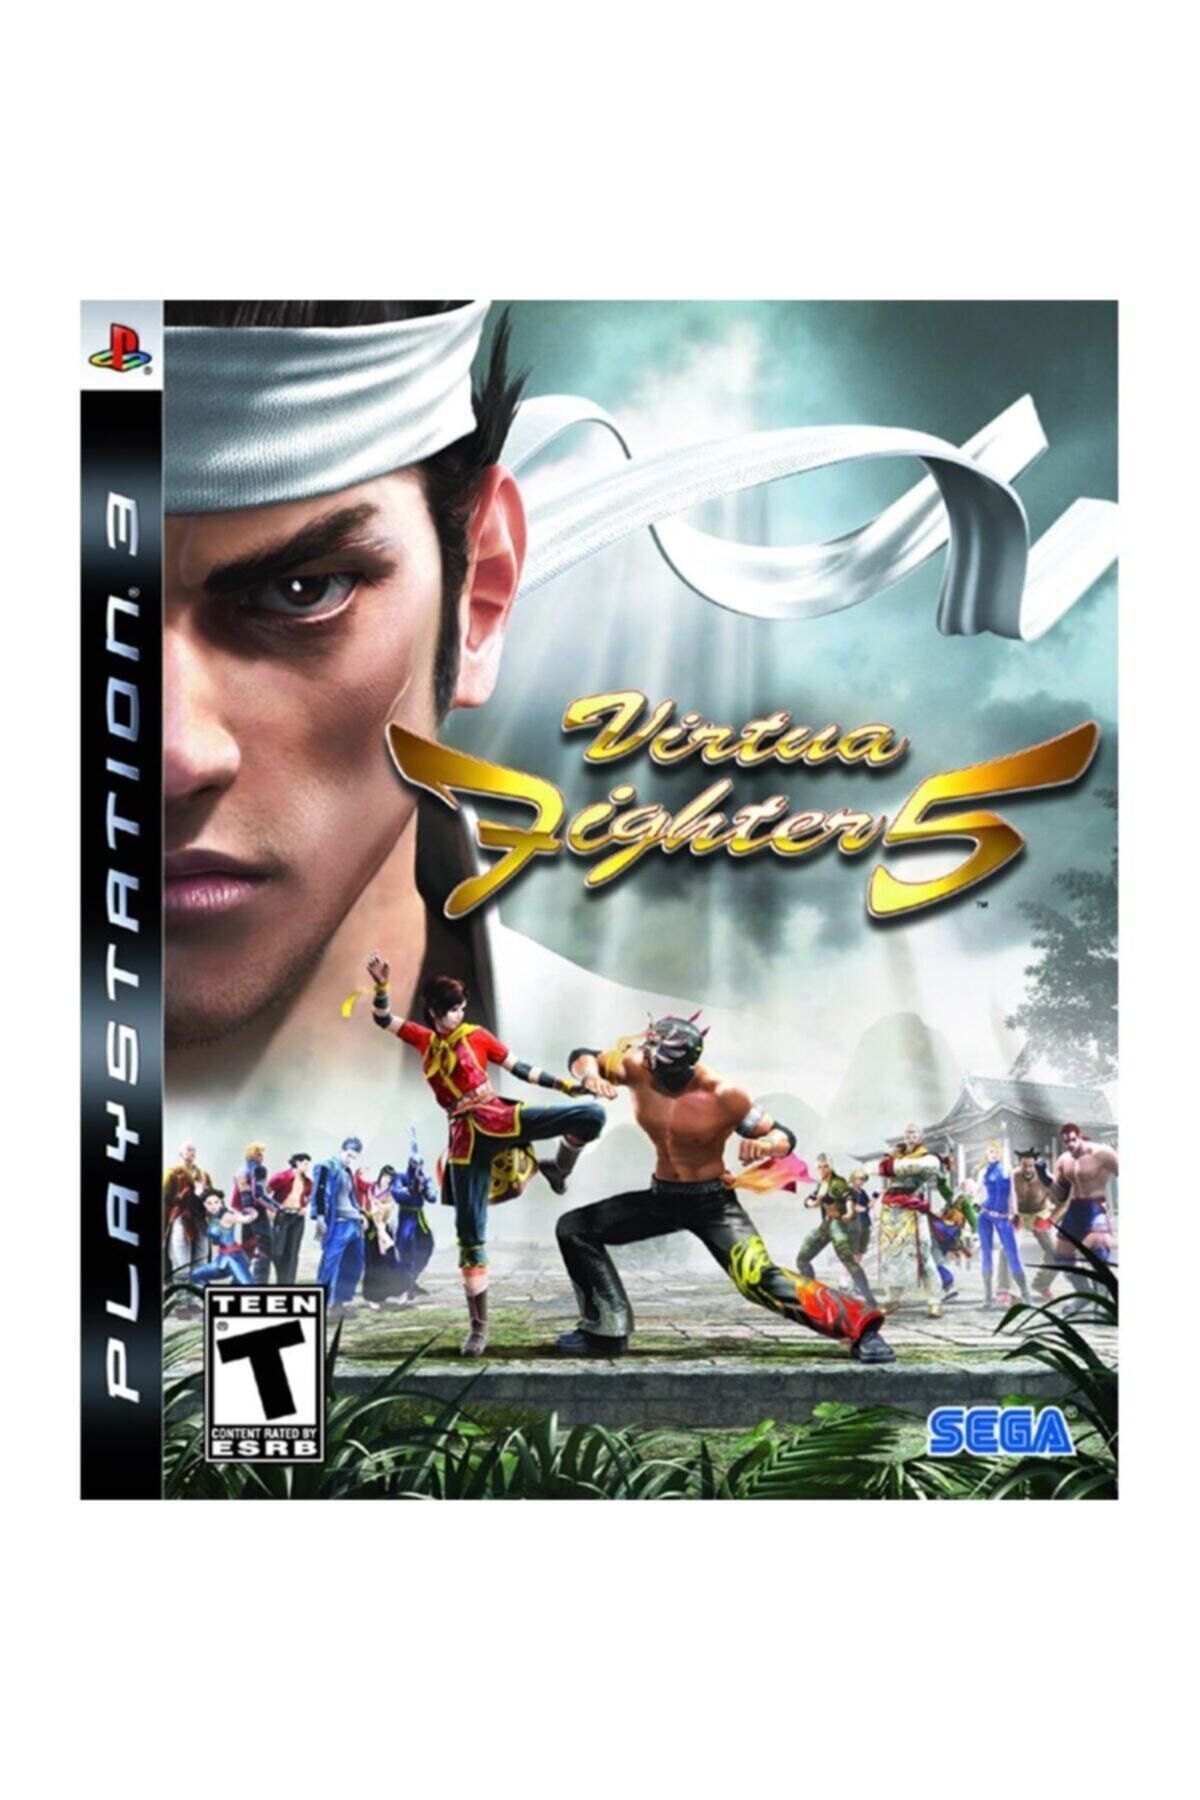 Sega Dahaaa Ucuzu Yok Playstation 3 Oyunu ( Virtua Fighter 5 Ps3 )--2,el--